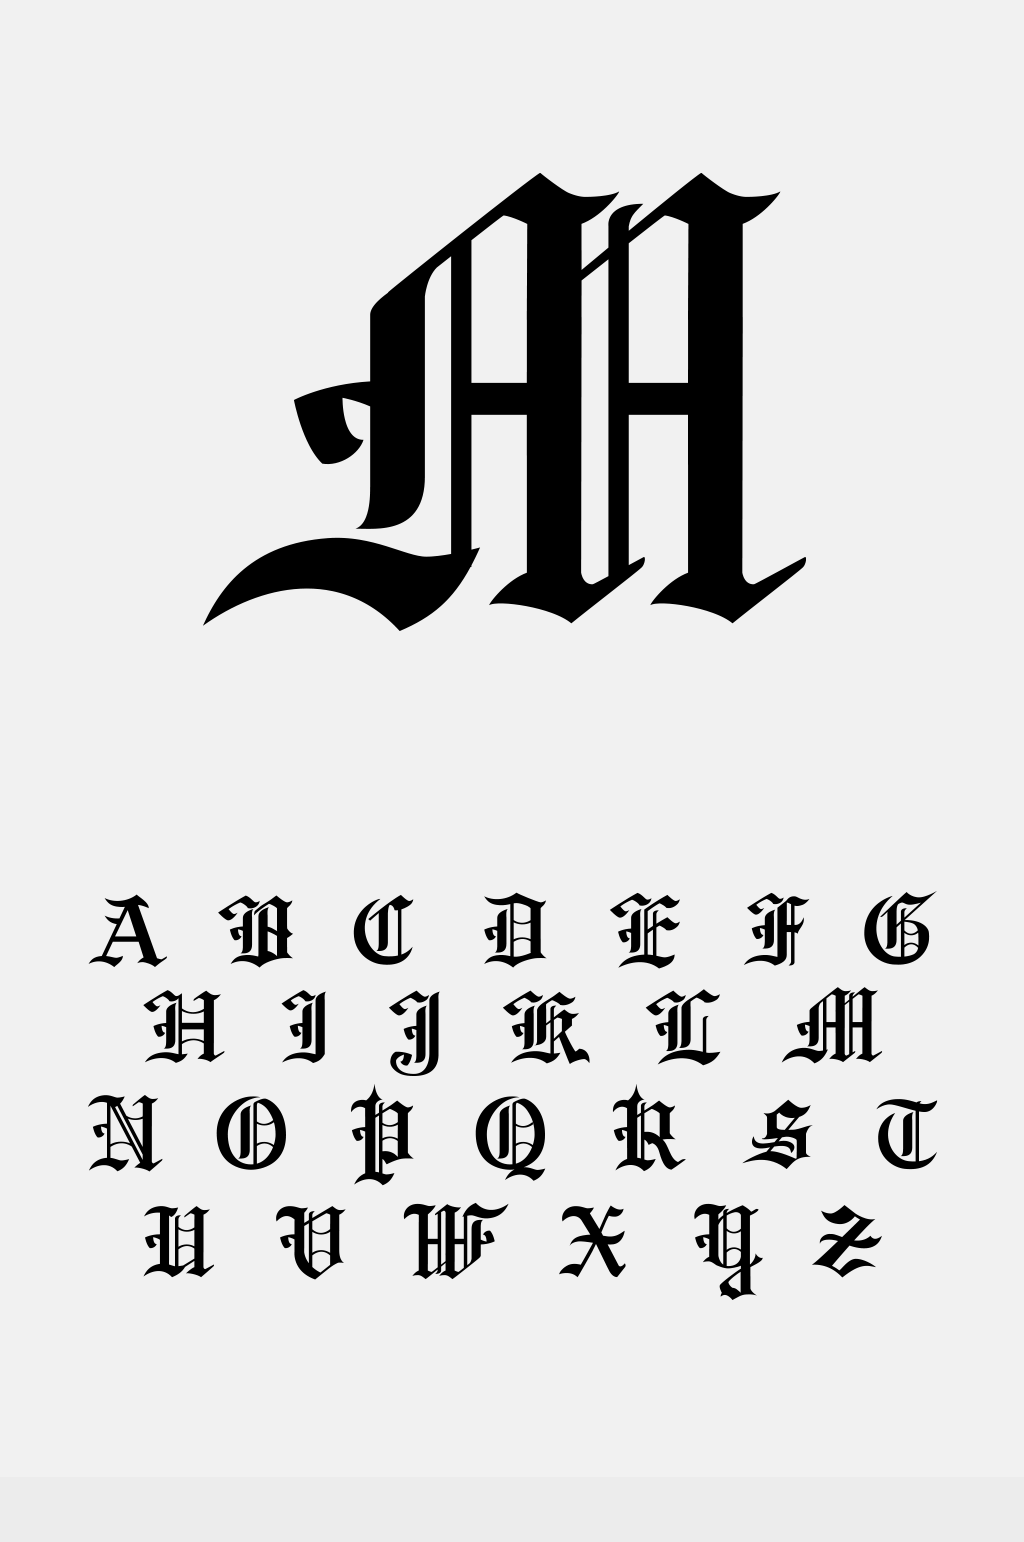 26个英文字母哥特式字体设计素材